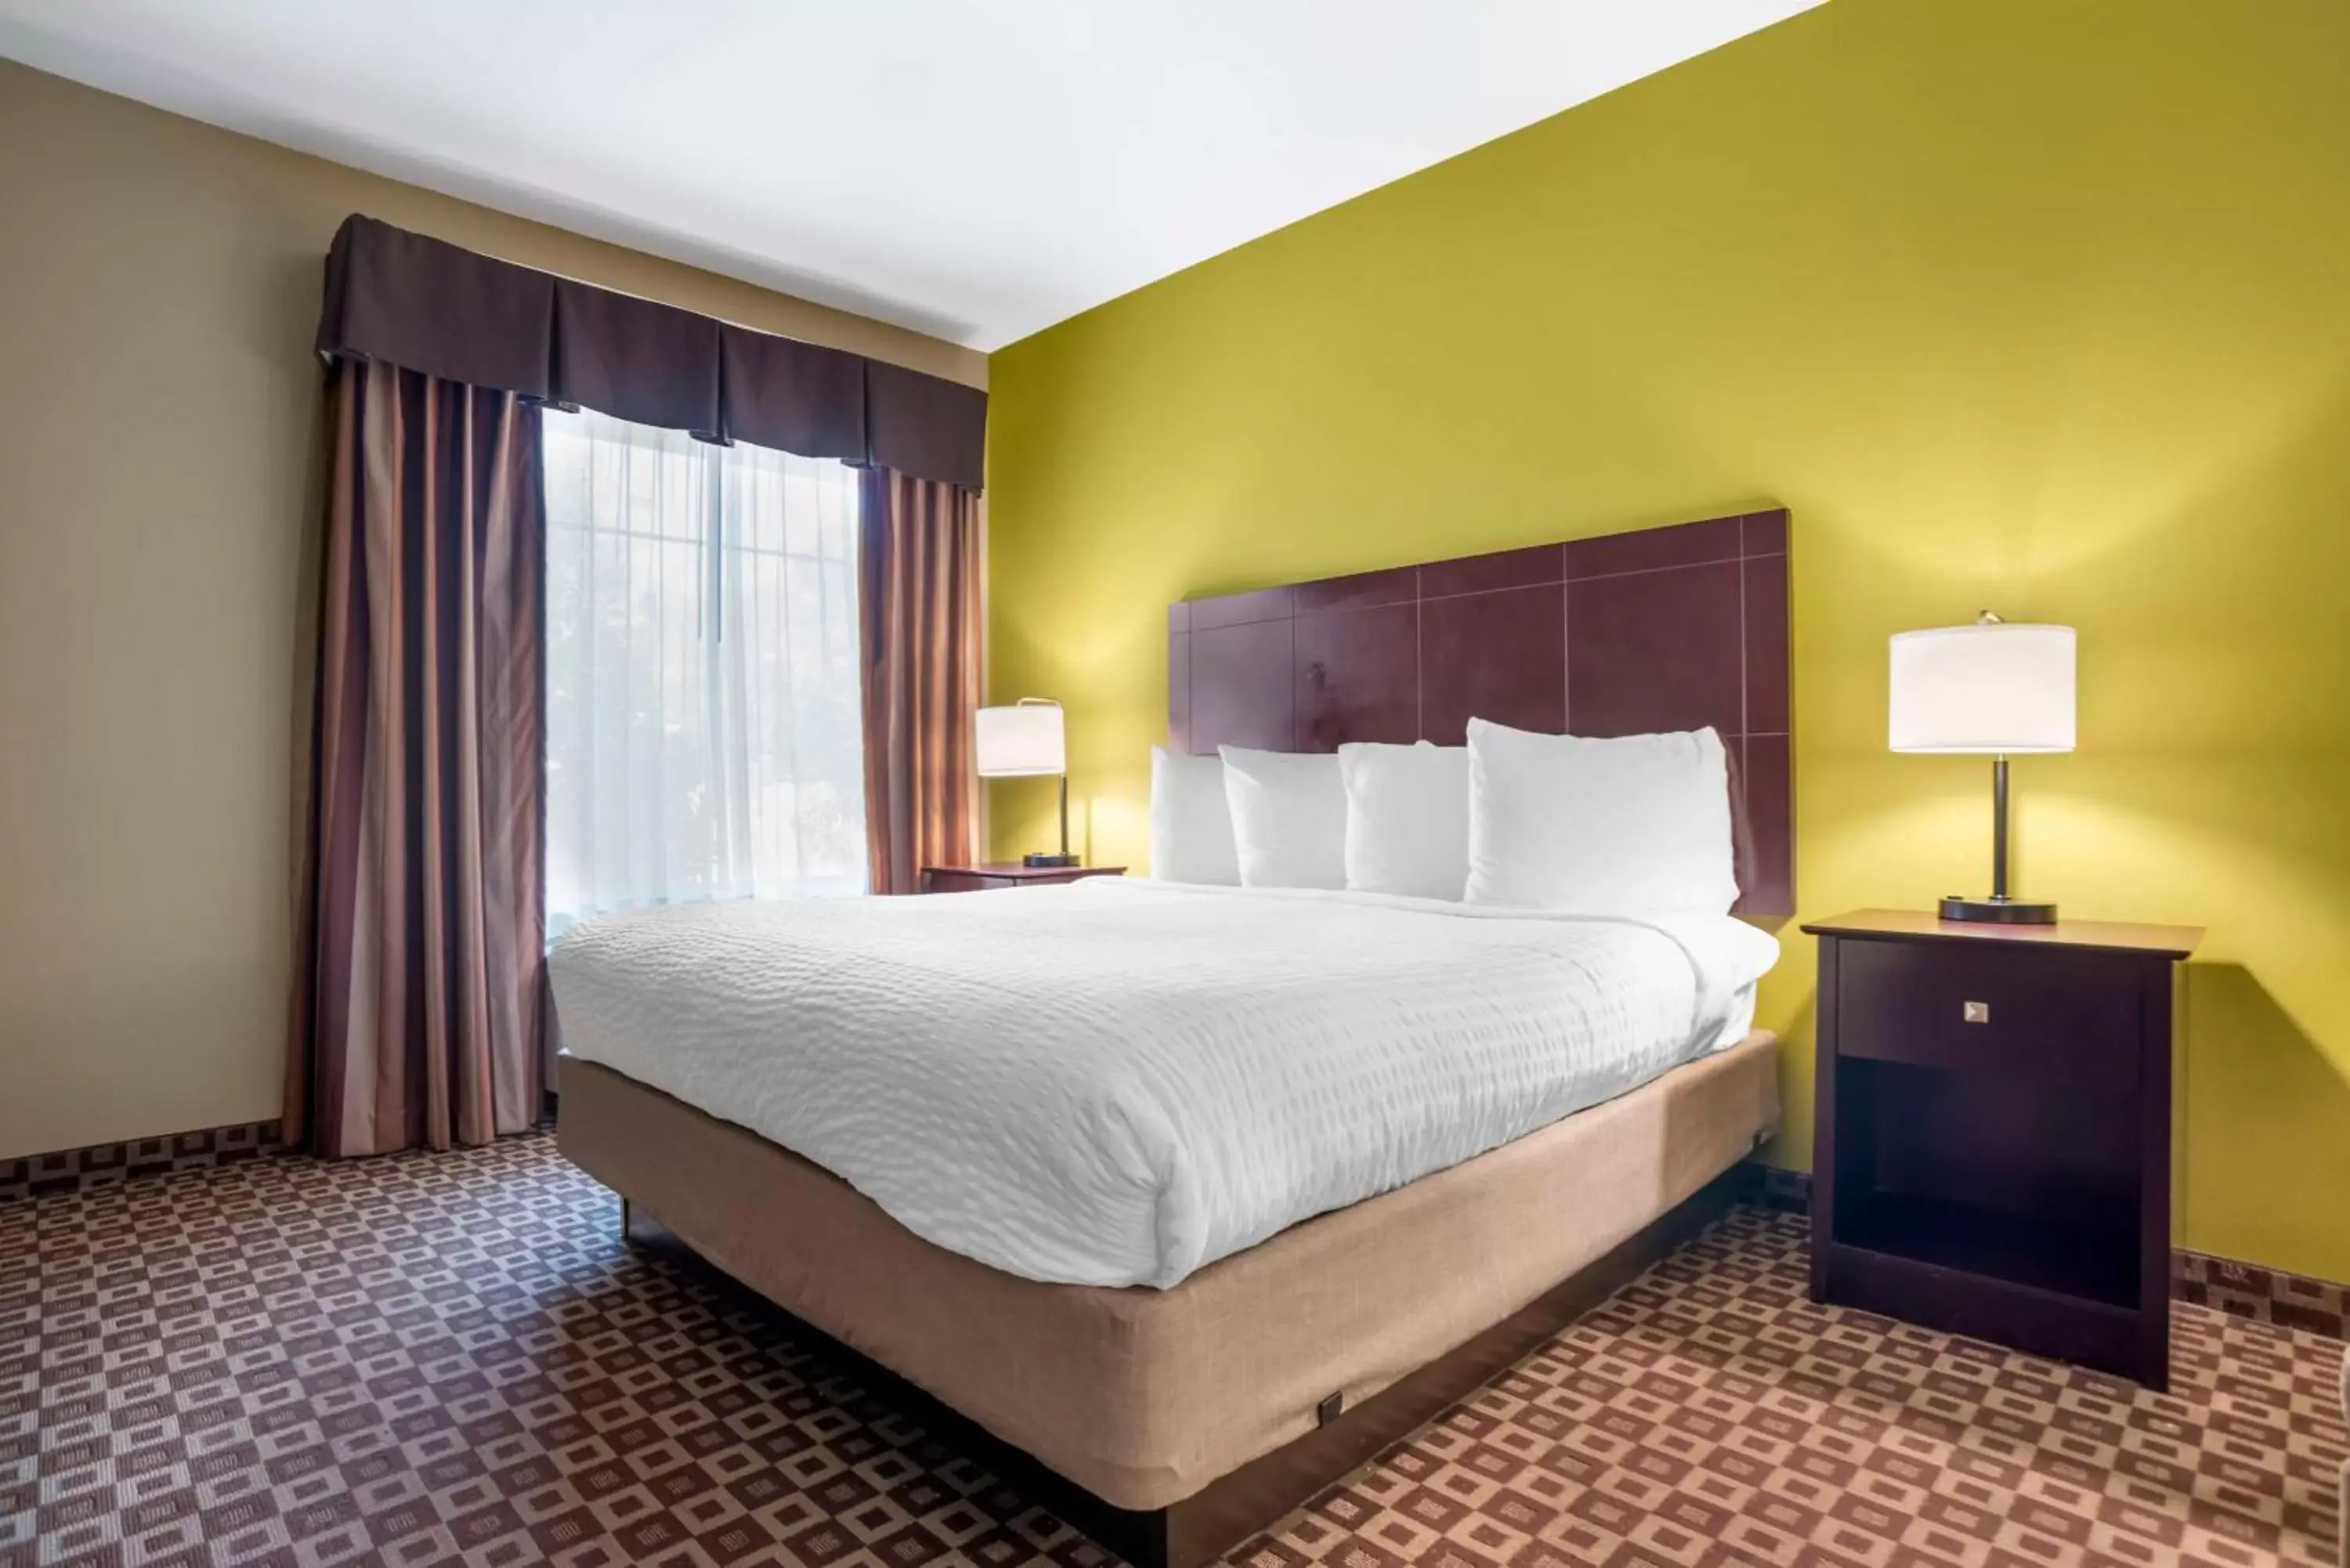 Bedroom, Bed in Best Western Plus Chalmette Hotel